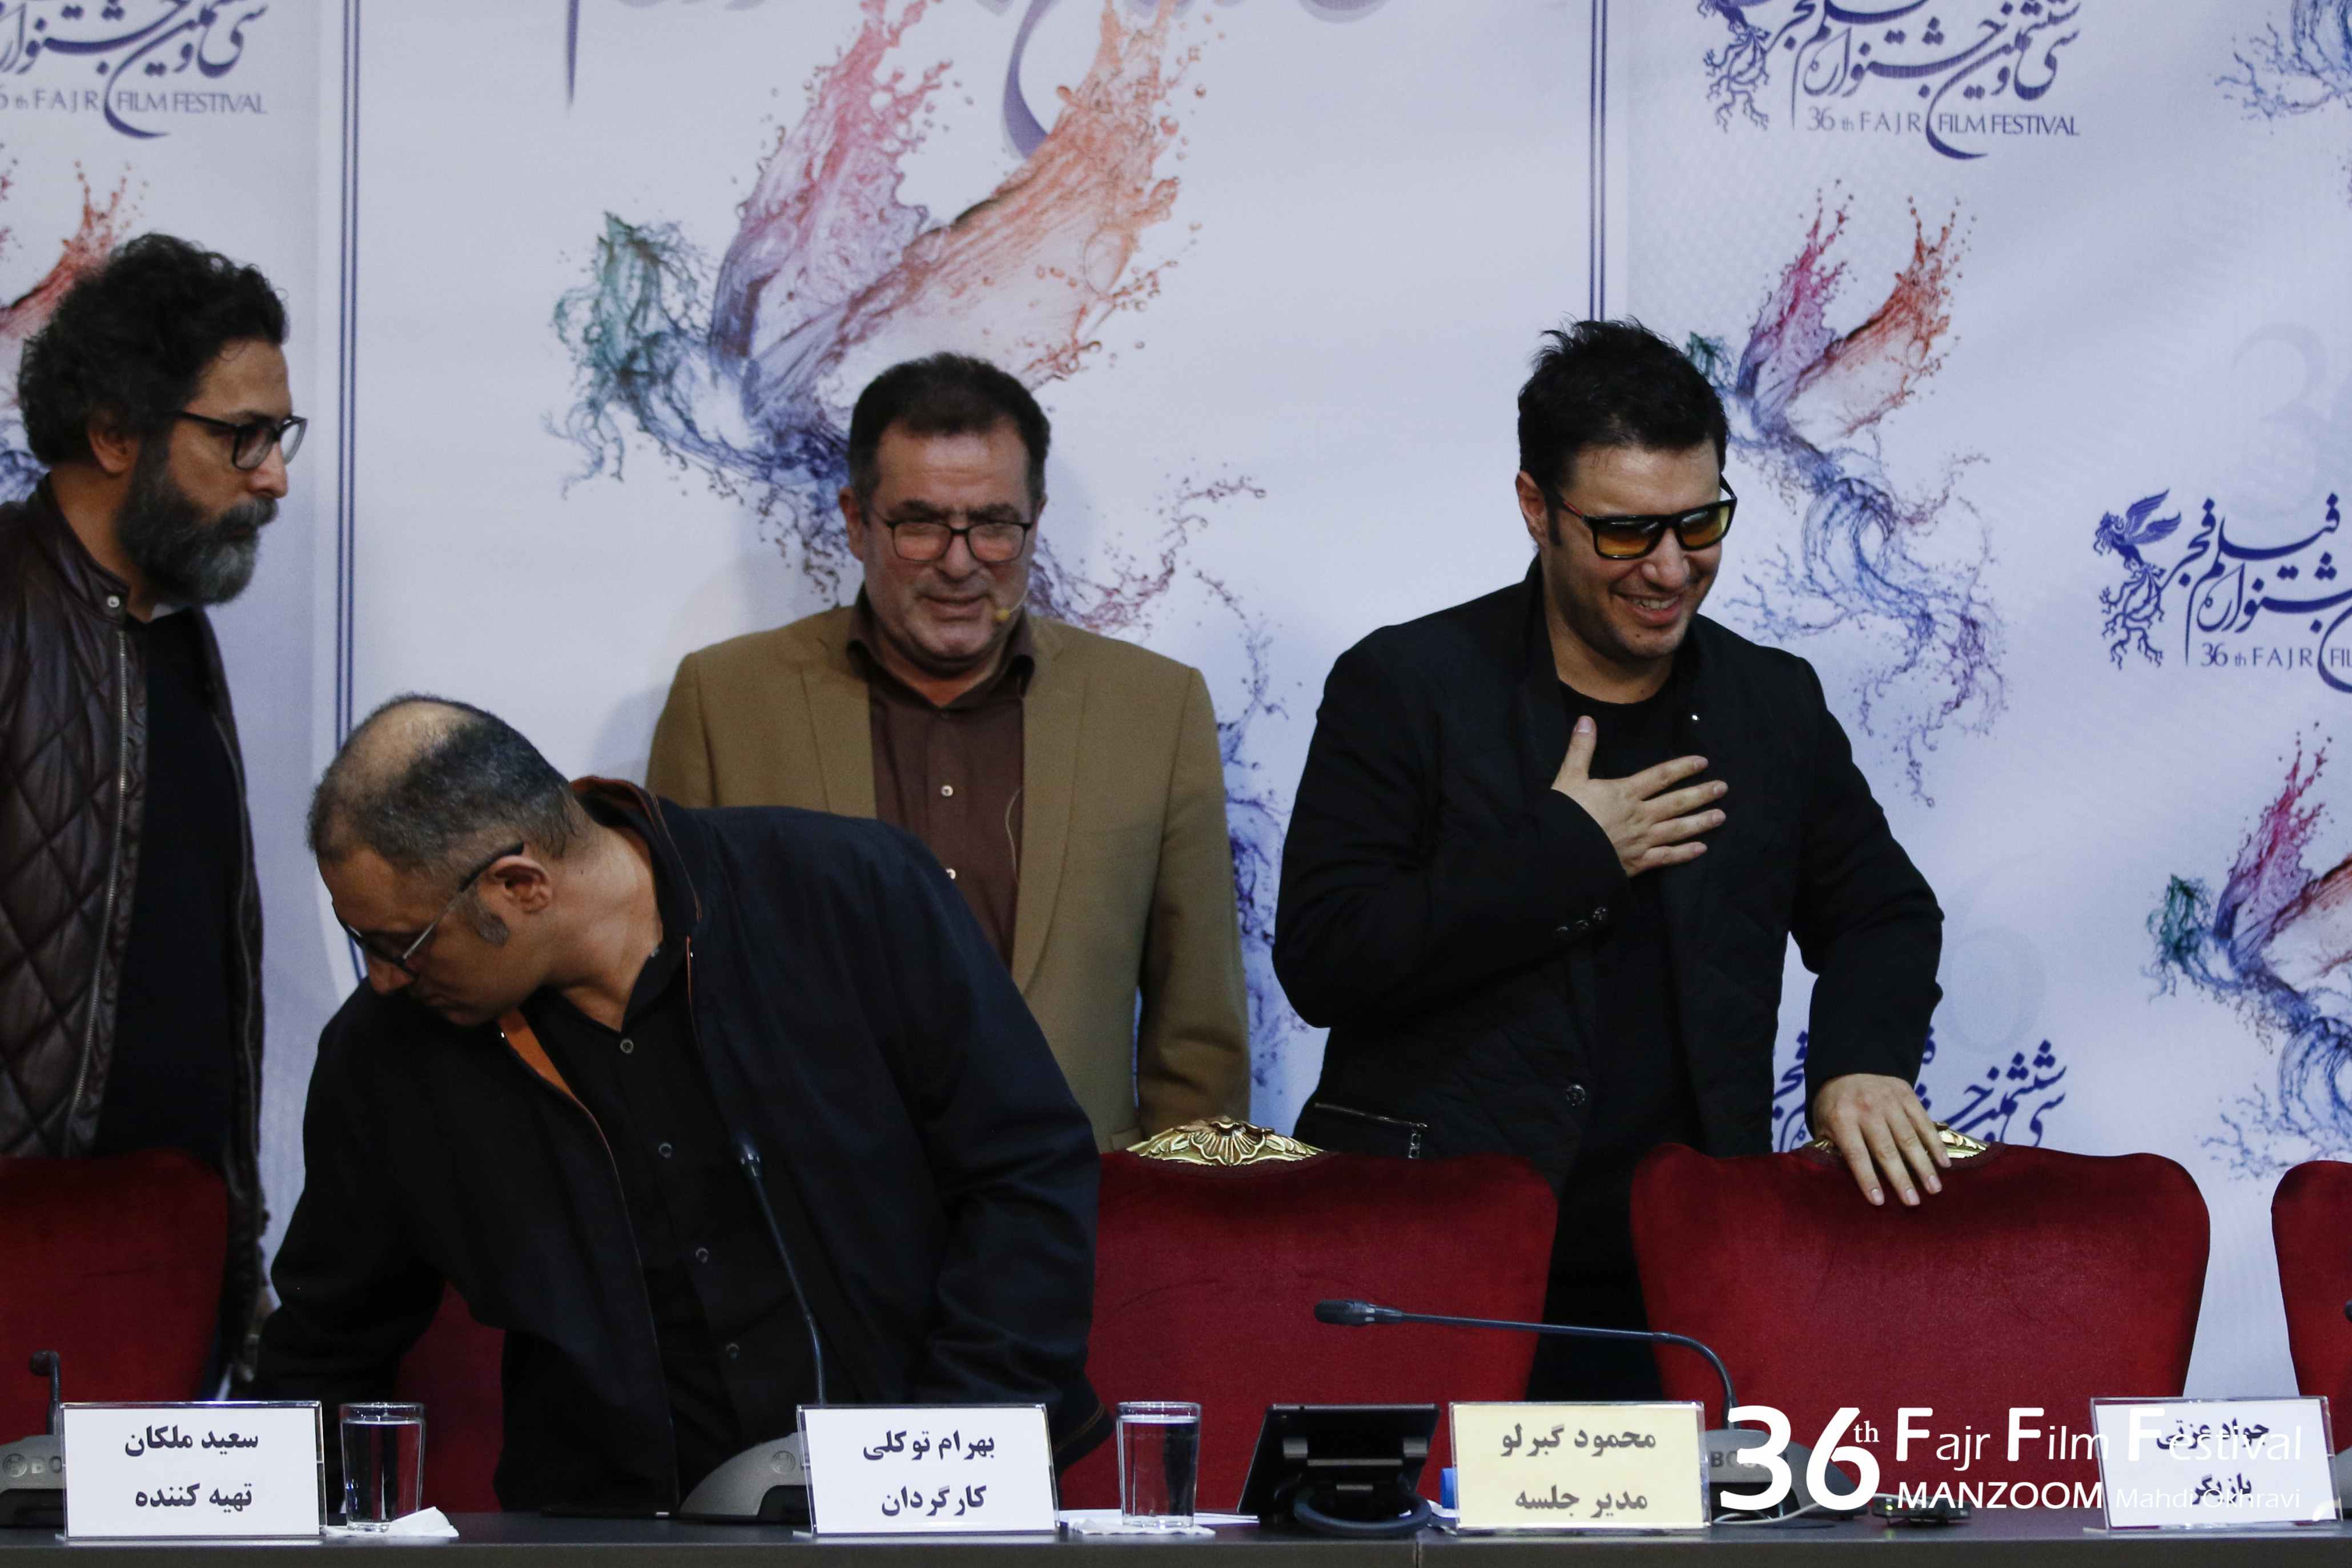 بهرام توکلی در نشست خبری فیلم سینمایی تنگه ابوقریب به همراه محمود گبرلو، جواد عزتی و سعید ملکان